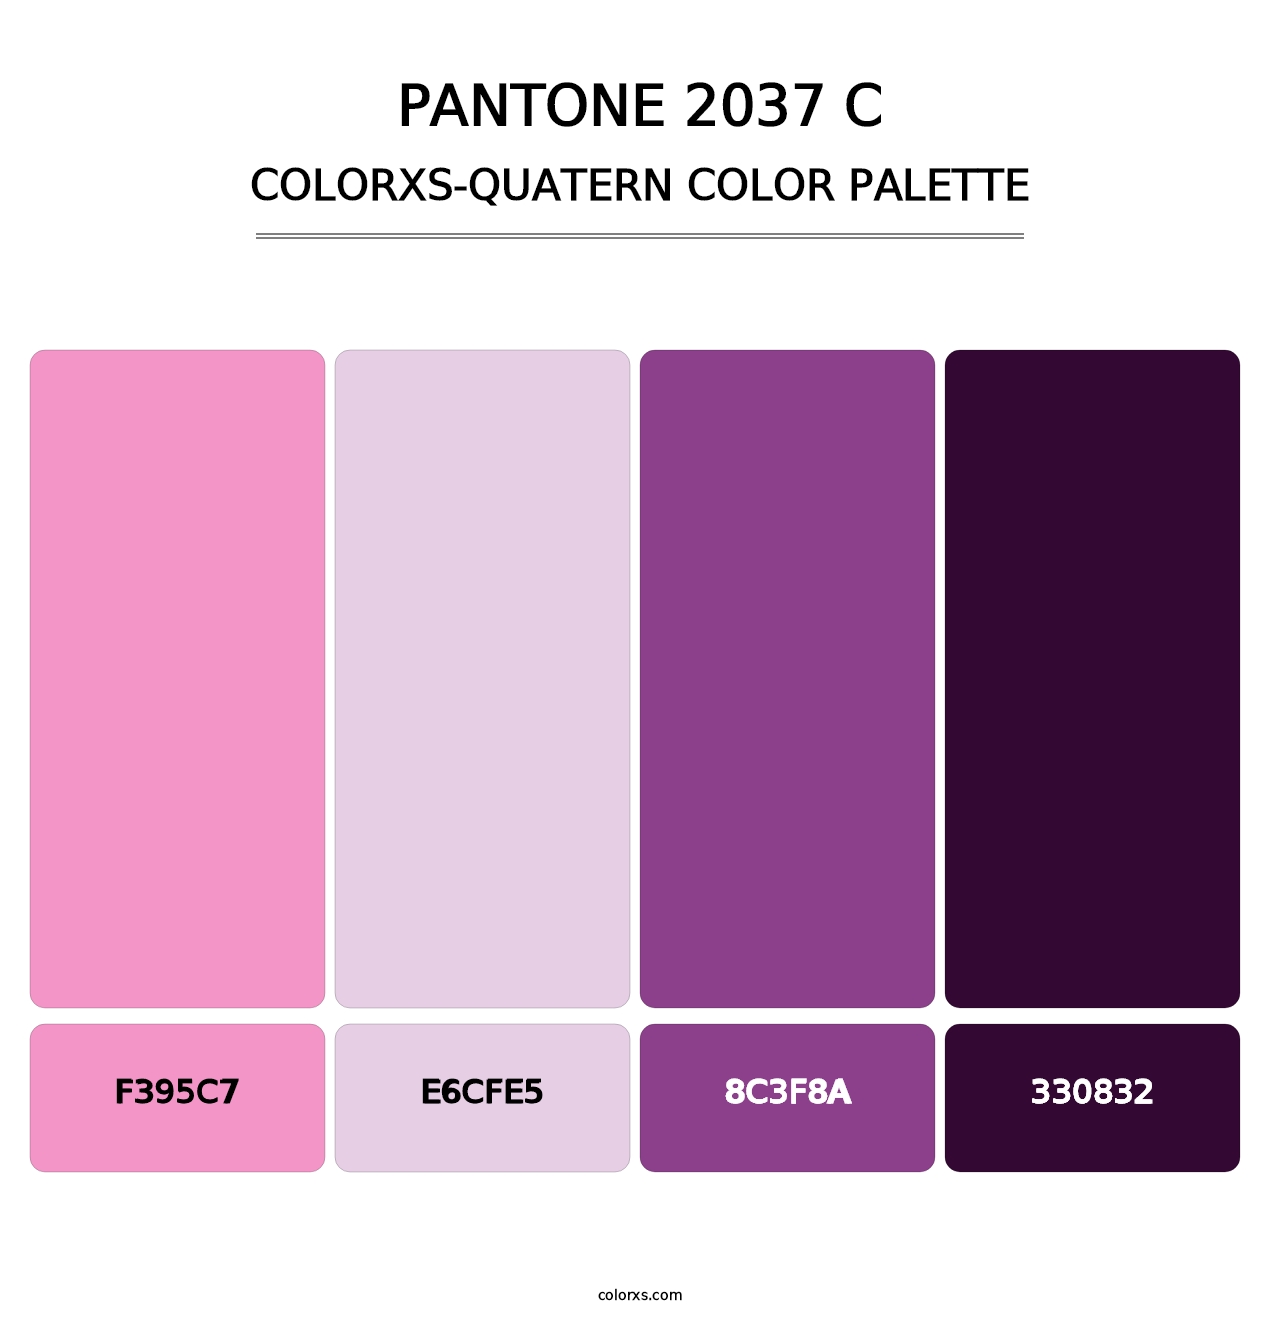 PANTONE 2037 C - Colorxs Quatern Palette